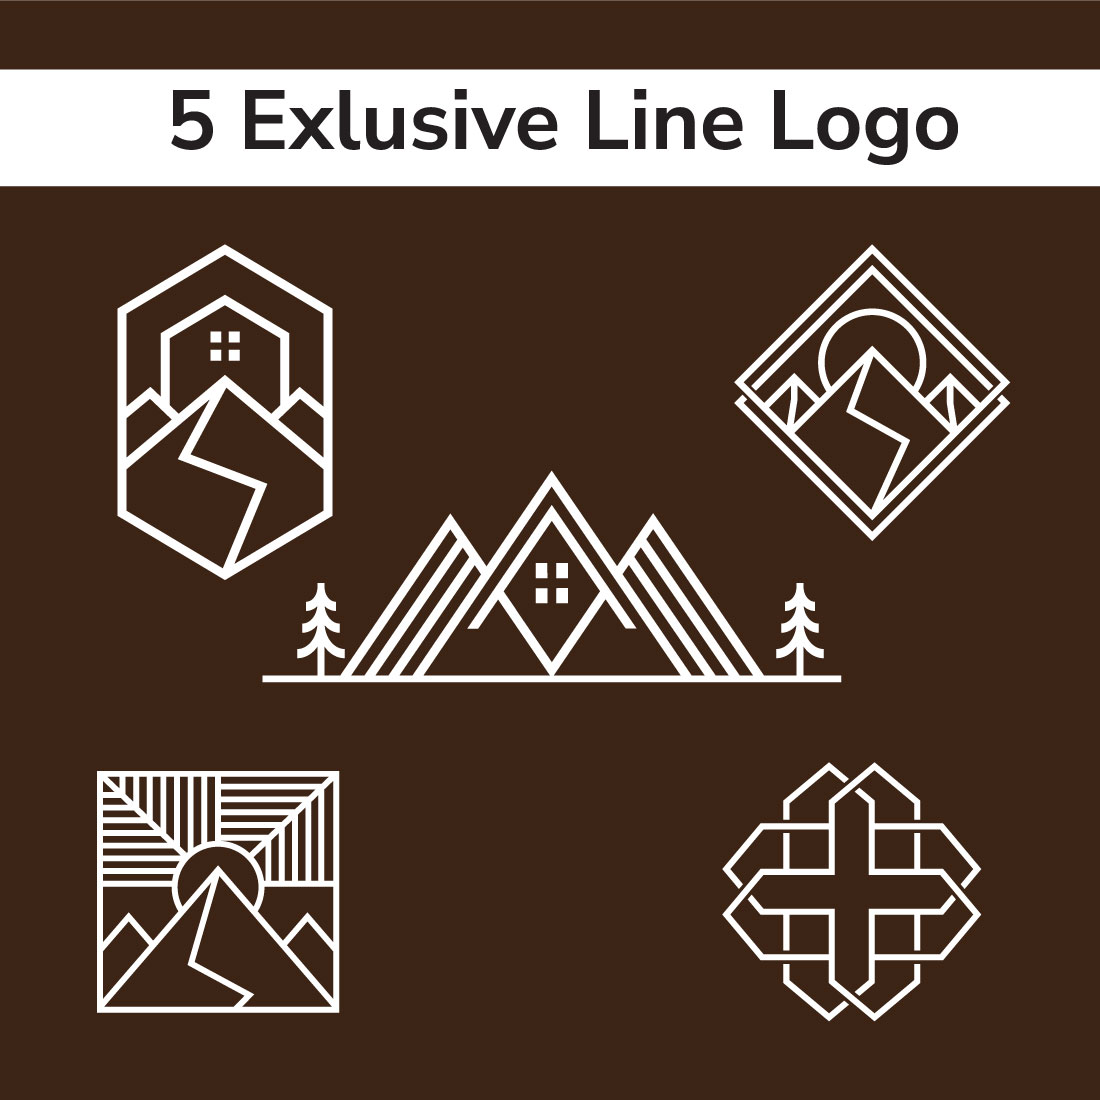 Line Logo Design cover image.